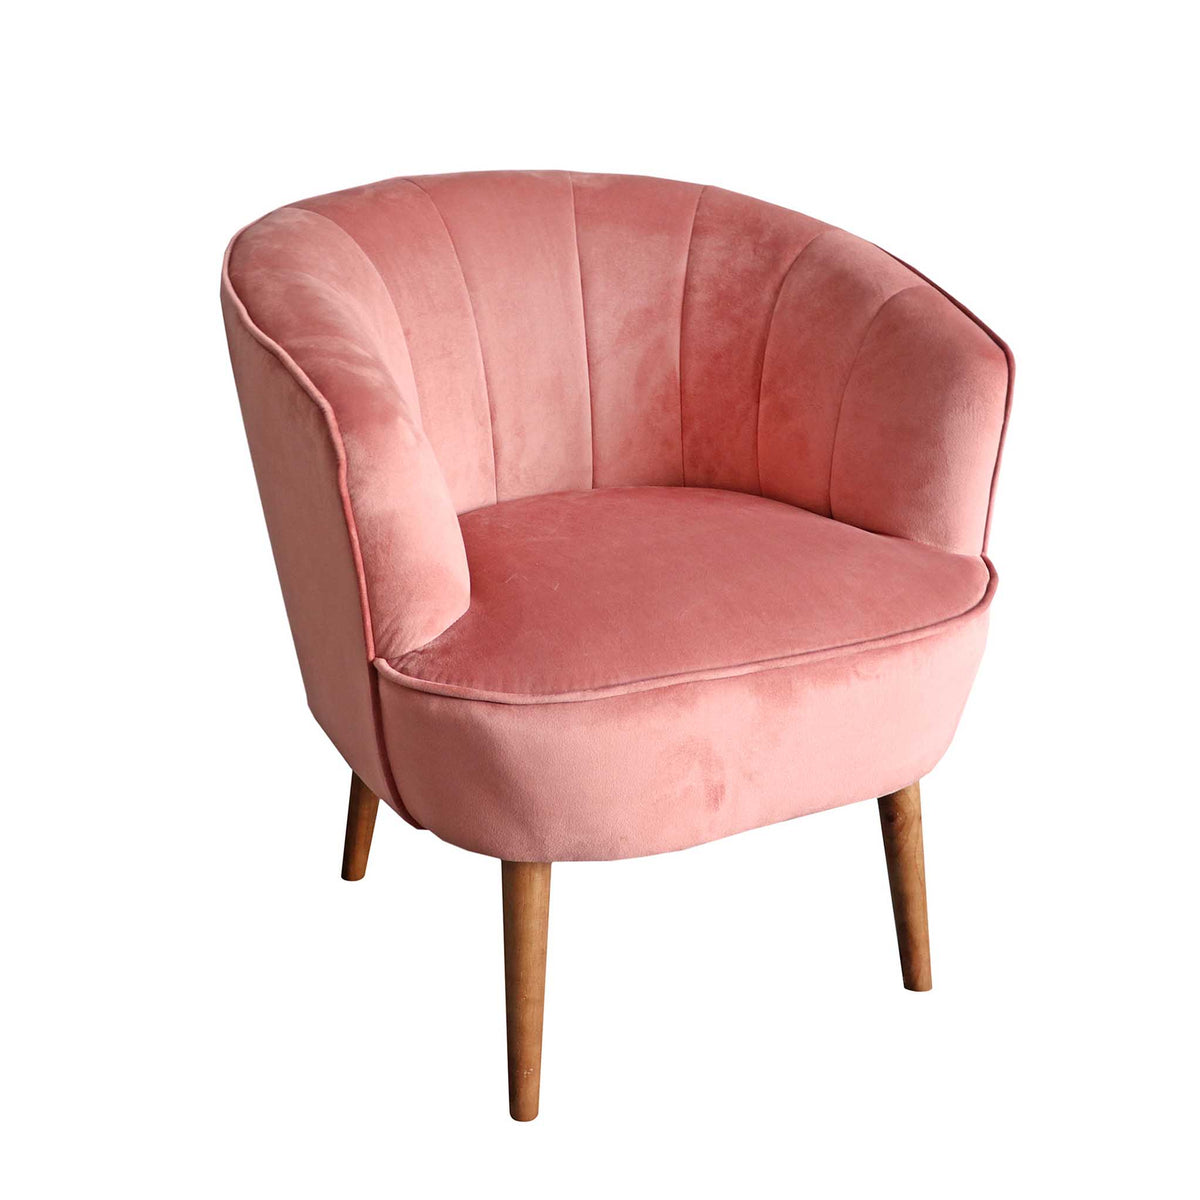 Hester Dusty Pink Padded Velvet Accent Armchair from Roseland